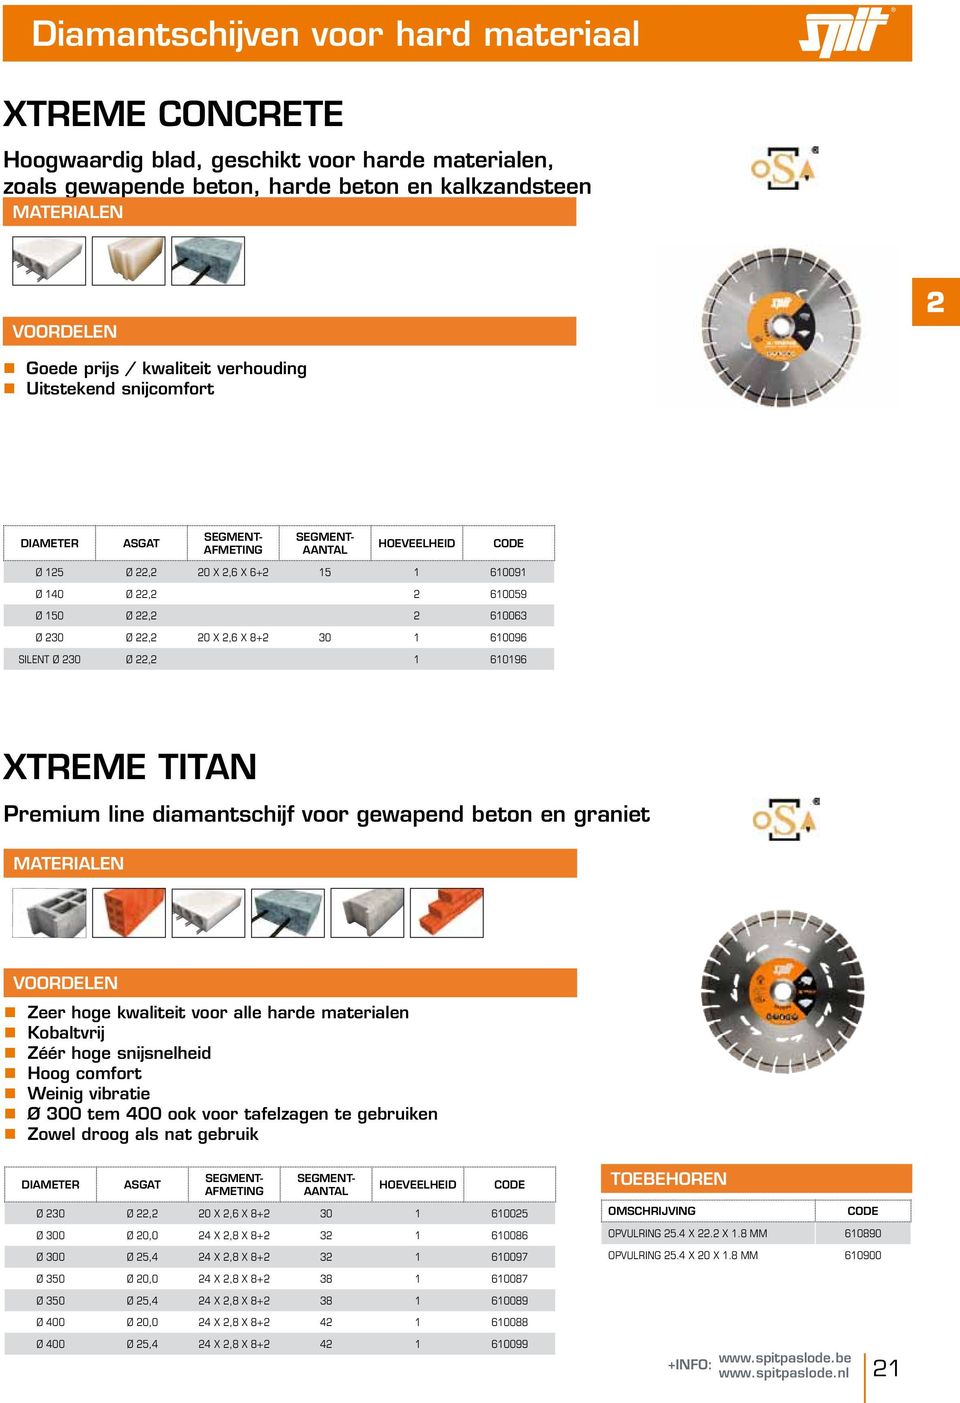 610196 XTREME TITAN Premium line diamantschijf voor gewapend beton en graniet nzeer hoge kwaliteit voor alle harde materialen nkobaltvrij nzéér hoge snijsnelheid nhoog comfort nweinig vibratie nø 300